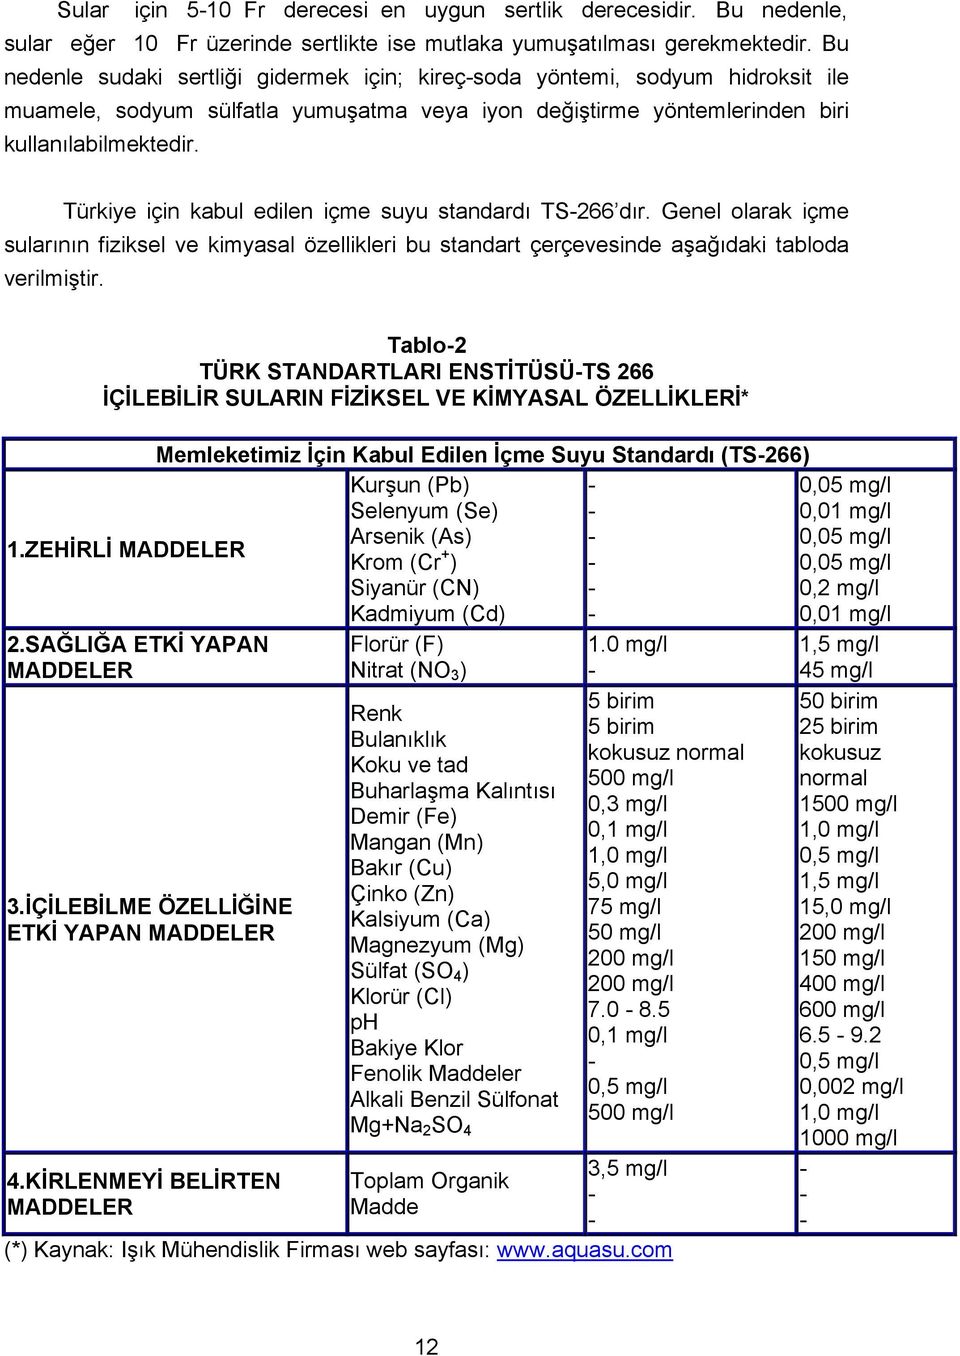 Türkiye için kabul edilen içme suyu standardı TS266 dır. Genel olarak içme sularının fiziksel ve kimyasal özellikleri bu standart çerçevesinde aşağıdaki tabloda verilmiştir.